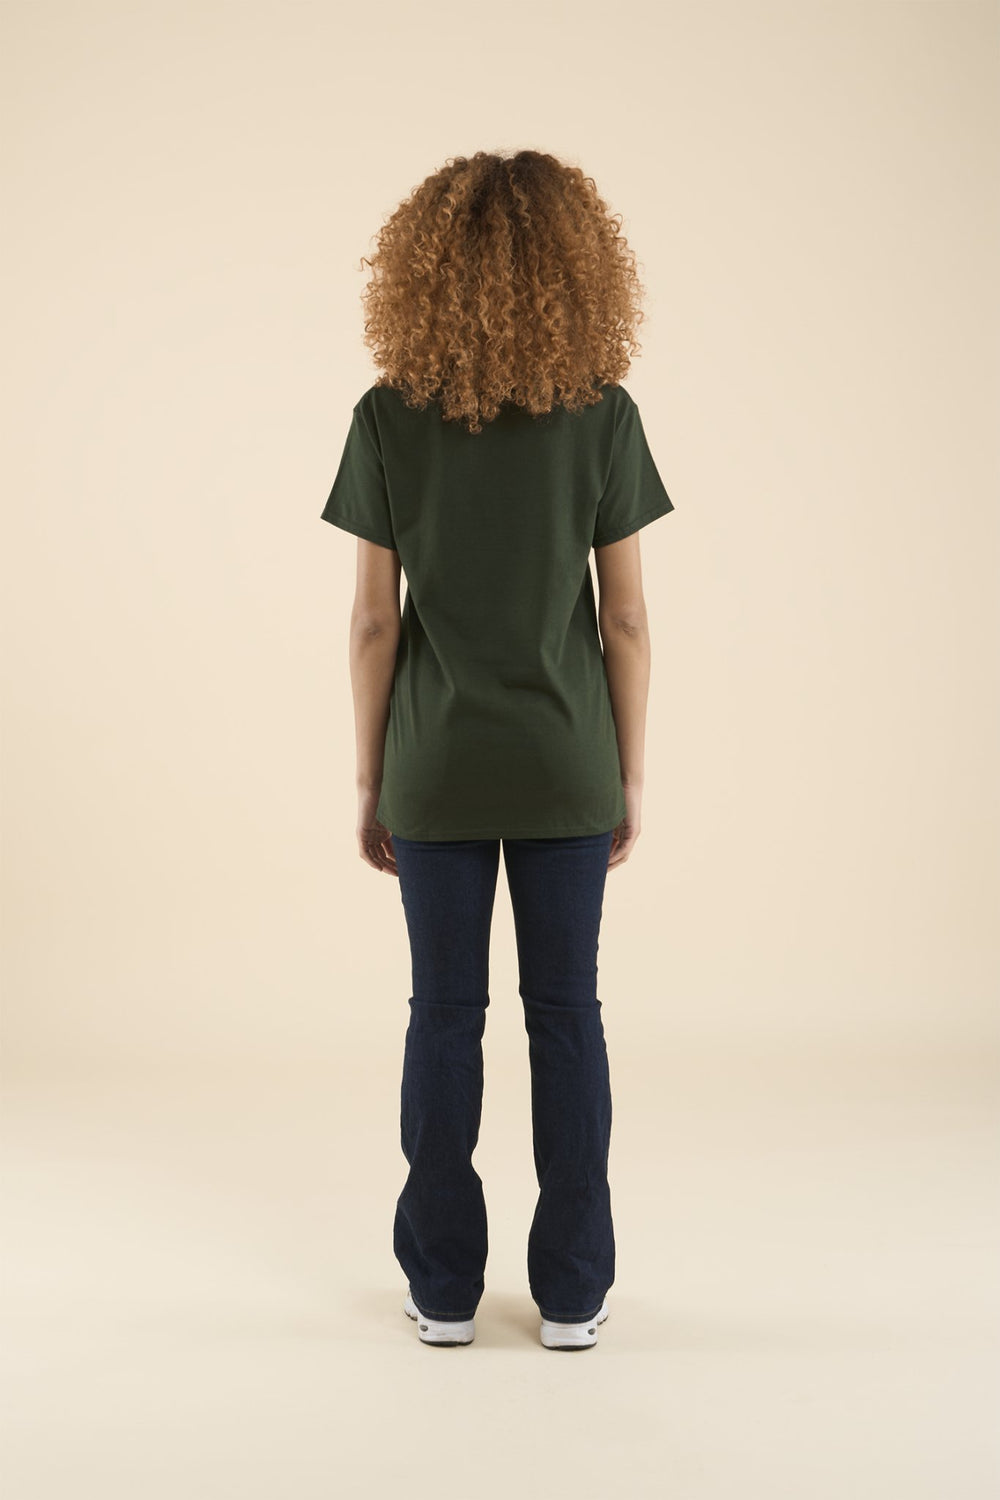 BOUTON D'OR・T-shirt unisexe・Vert - Le Cartel